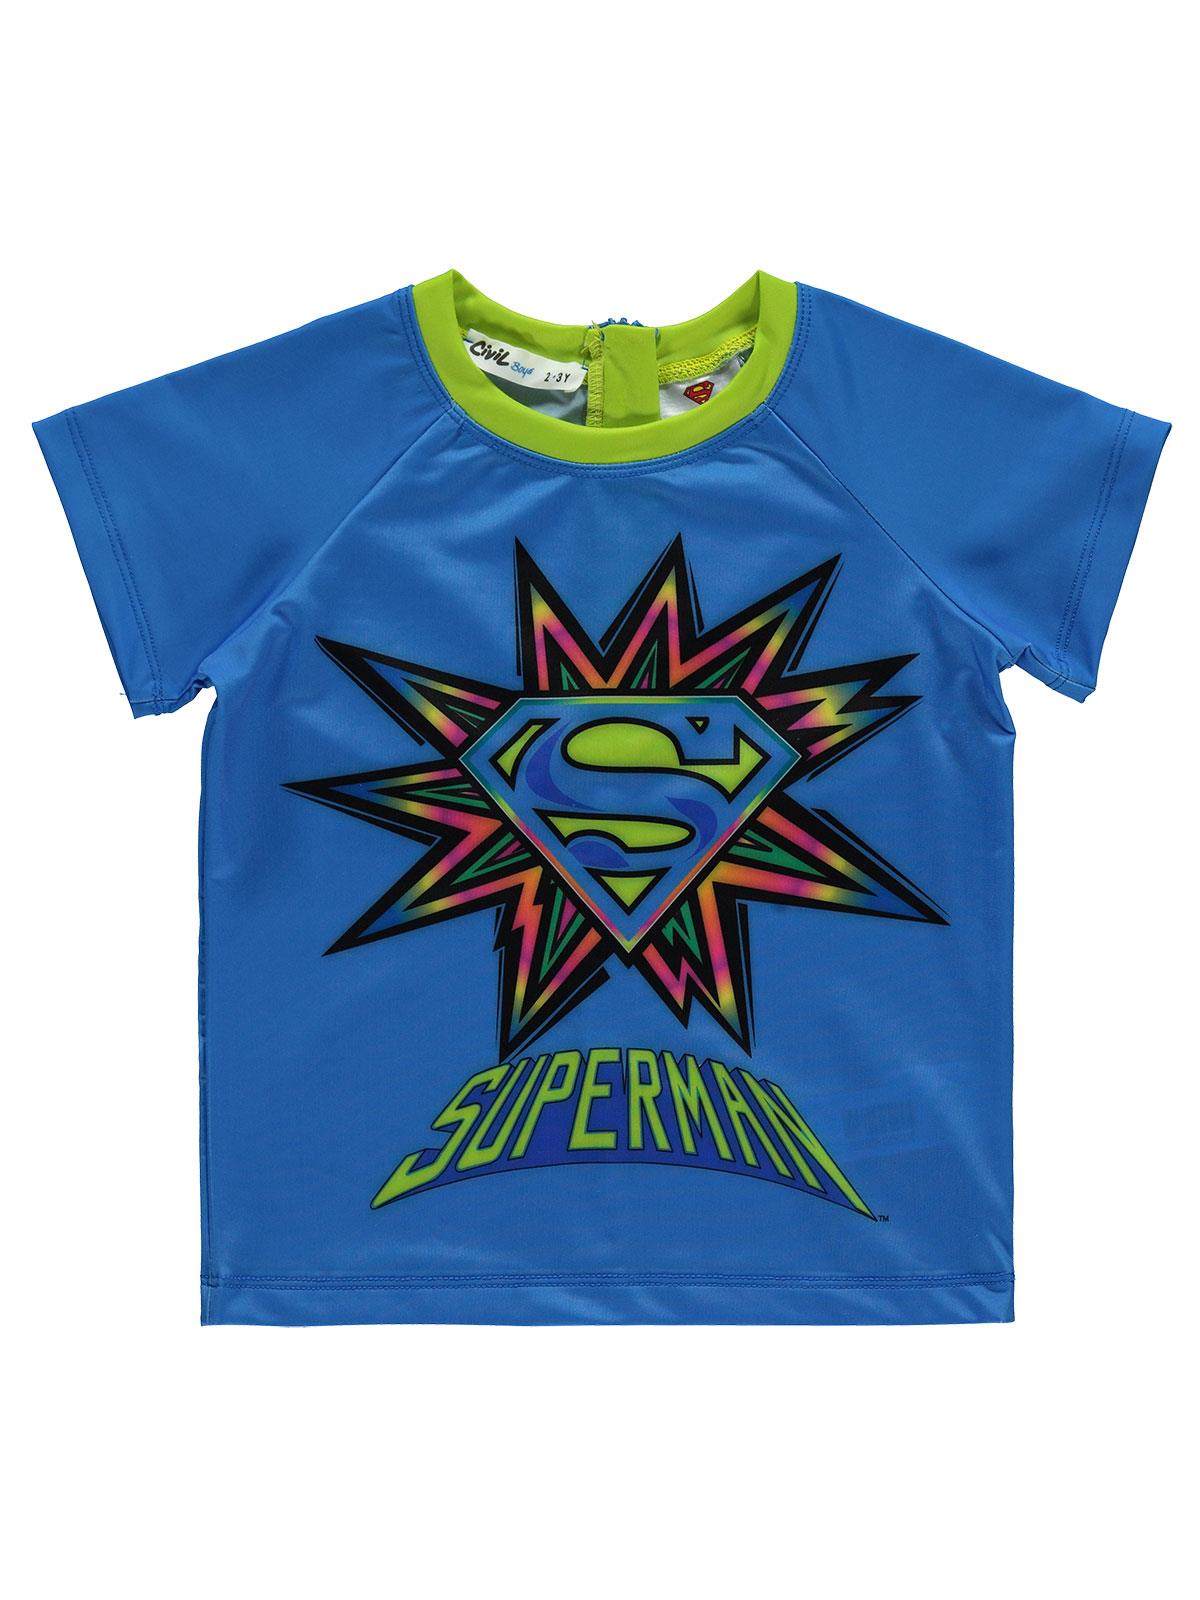 Süperman Erkek Çocuk Tişört Mayo 2-5 Yaş Saks Mavisi